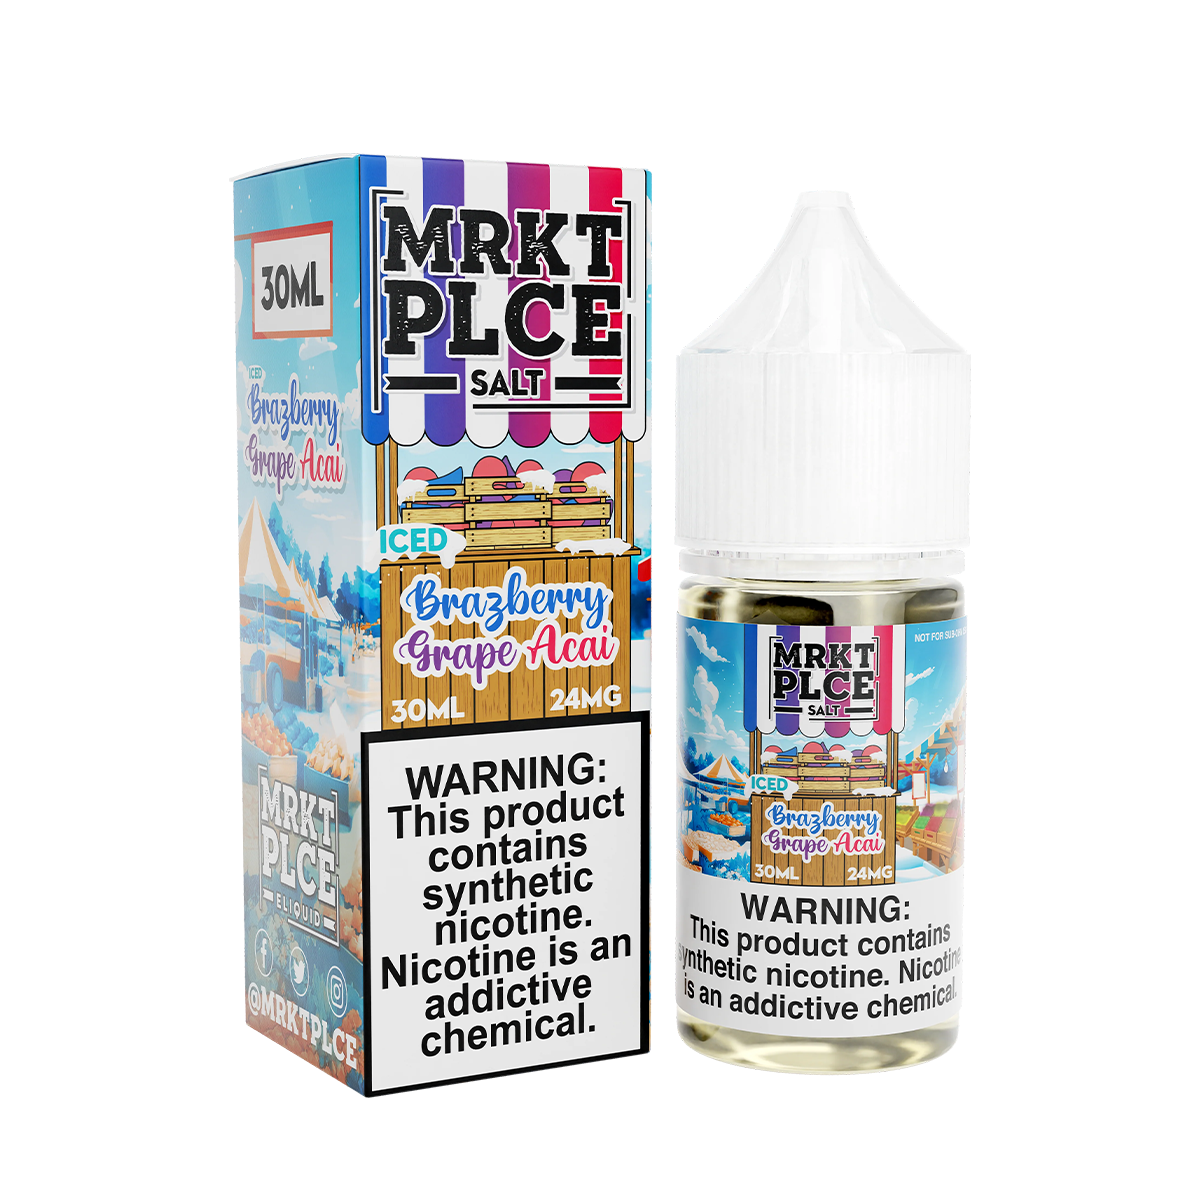 MRKT PLCE Salt Nicotine Vape Juice 24 Mg 30 Ml Iced Brazberry Grape Acai